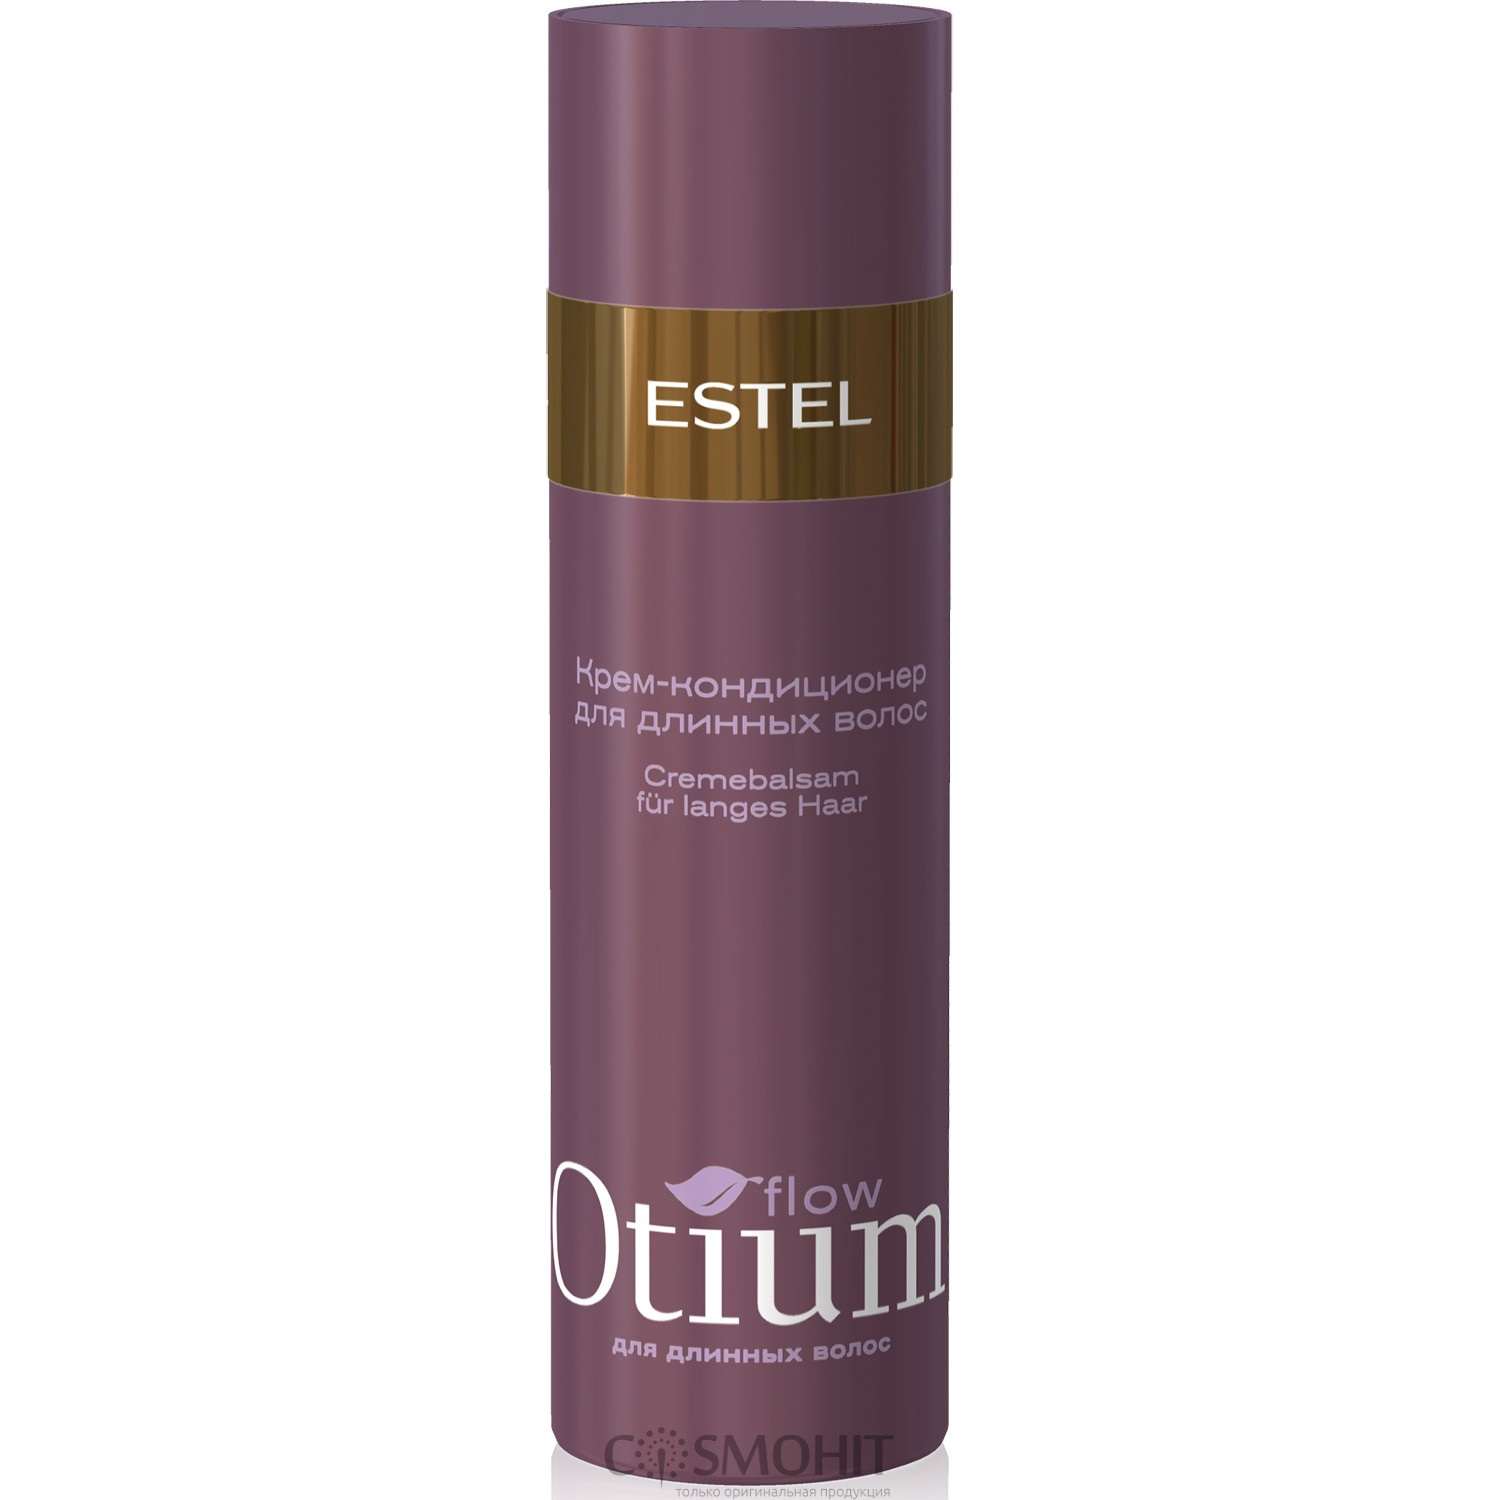 Средство для длинных волос. Спрей Estel Otium. Estel спрей для волос блеск Otium. Power-шампунь для длинных волос Otium XXL, 250 мл. Estel шампунь Otium Flow.